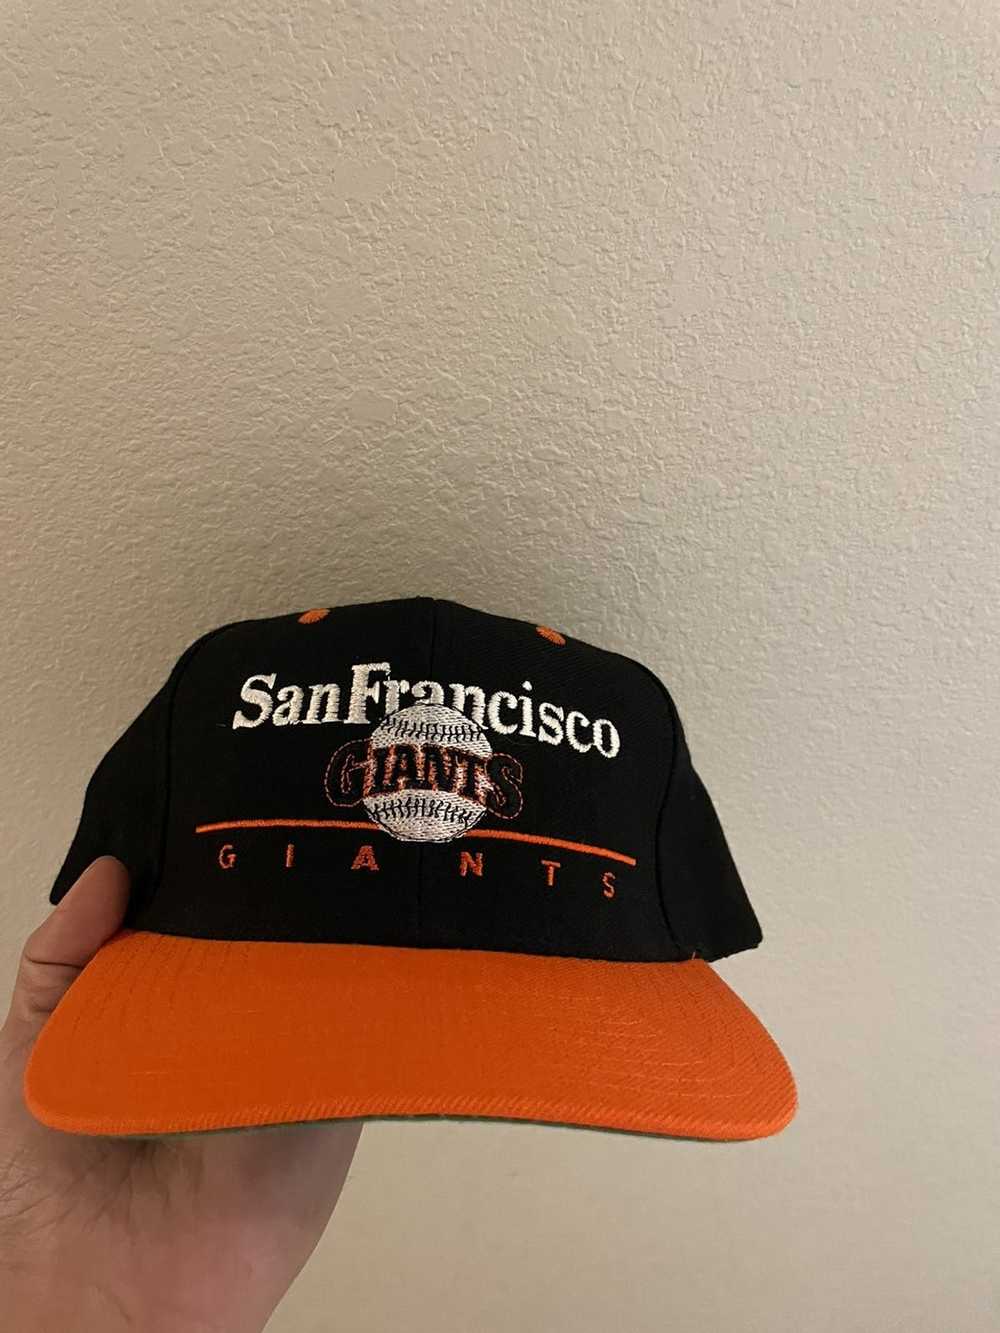 Vintage Vintage San Francisco giants hat - image 1